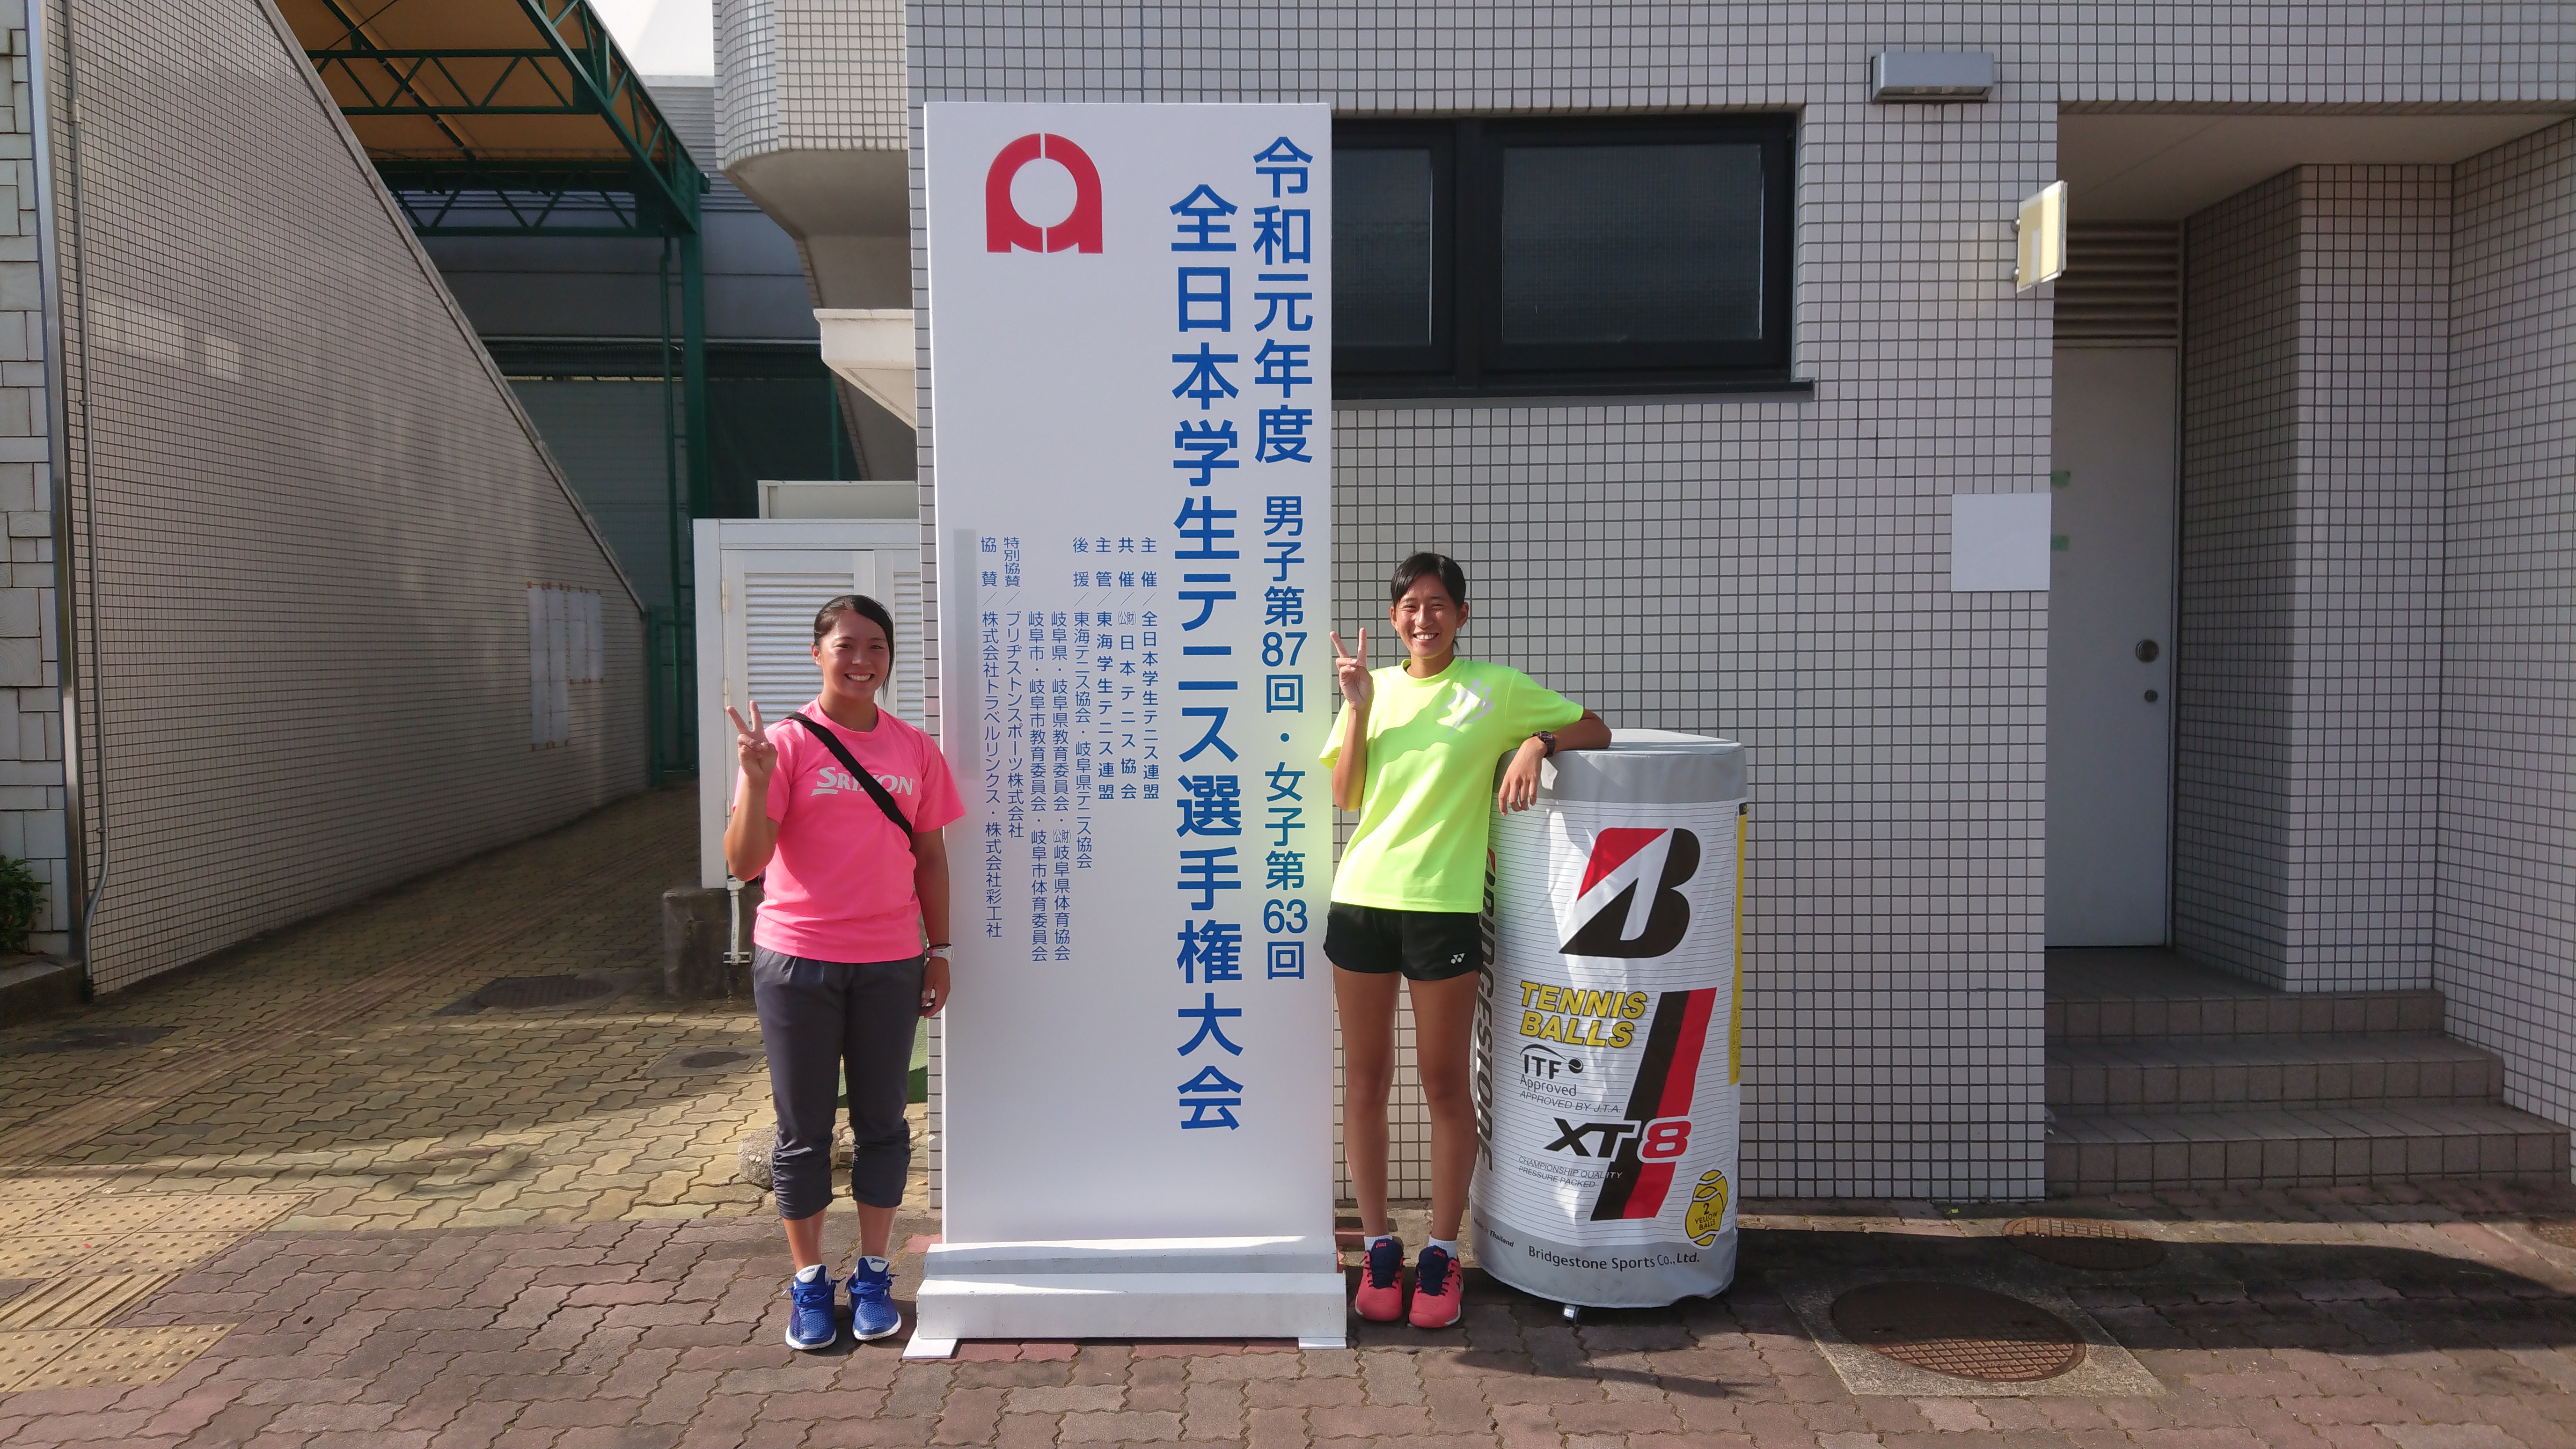 硬式庭球 19年度全日本学生テニス選手権大会 ニュース 硬式庭球部 東京国際大学